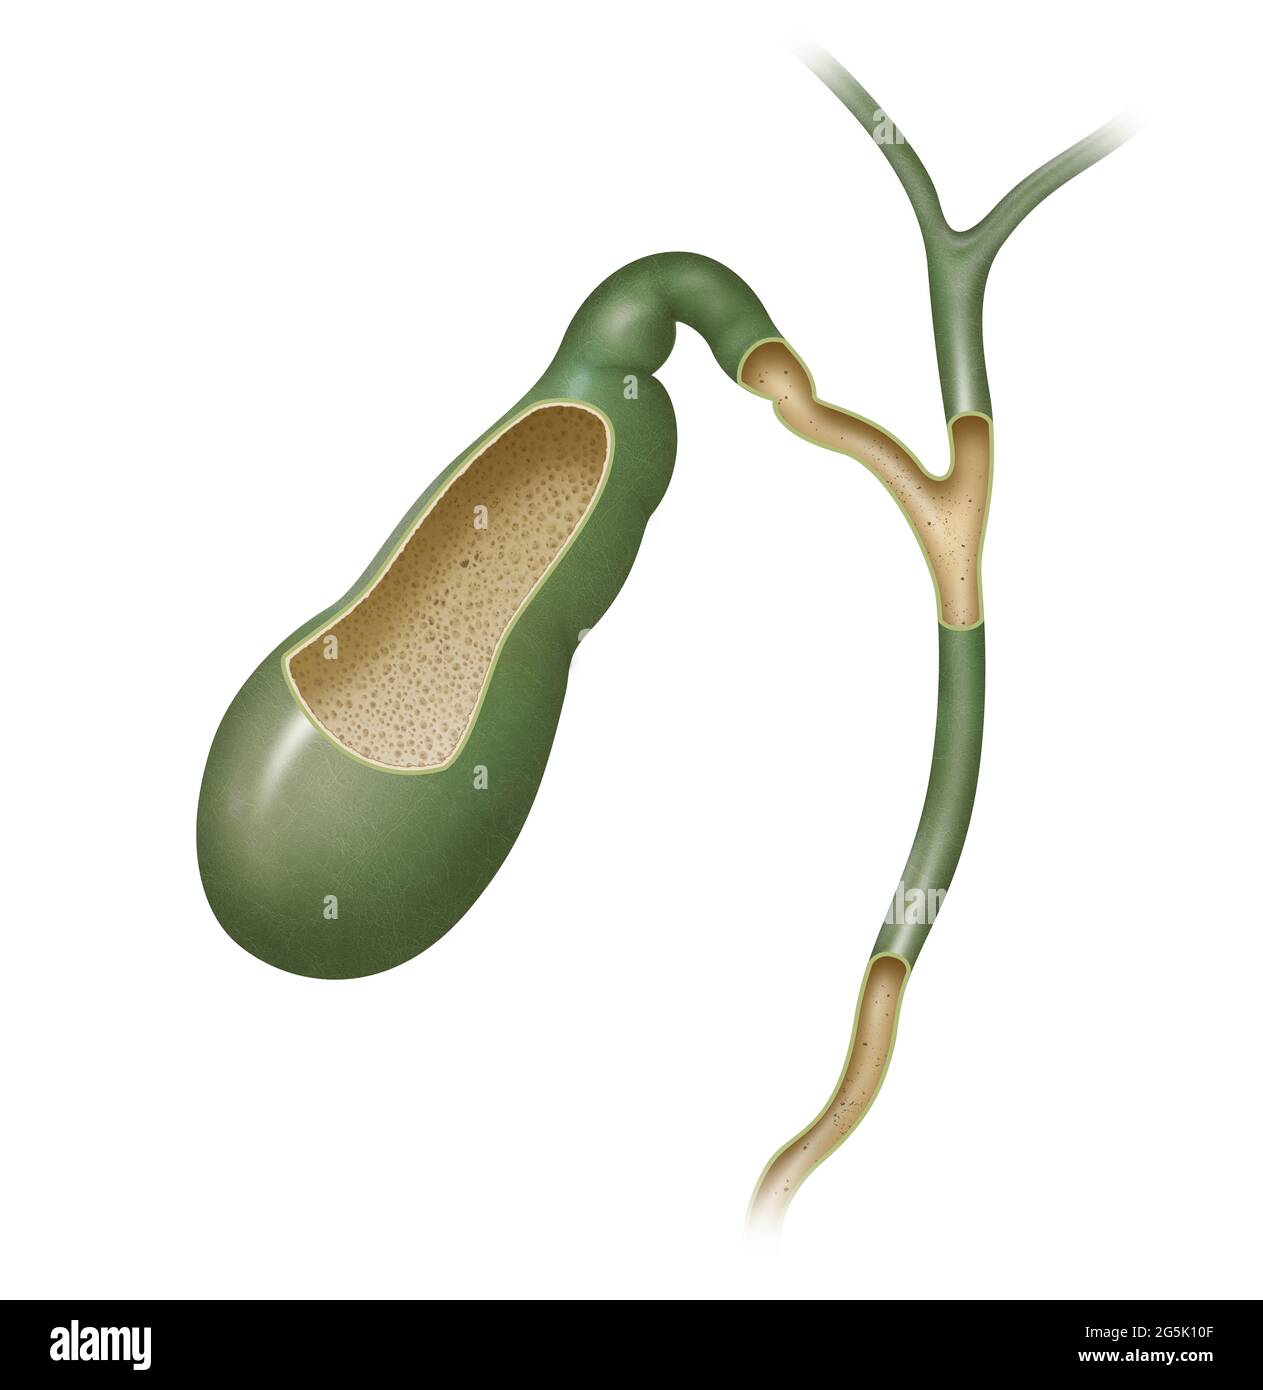 Chez les vertébrés, la vésicule biliaire est un petit organe creux où la bile est stockée et concentrée avant d'être libérée dans l'intestin grêle Banque D'Images